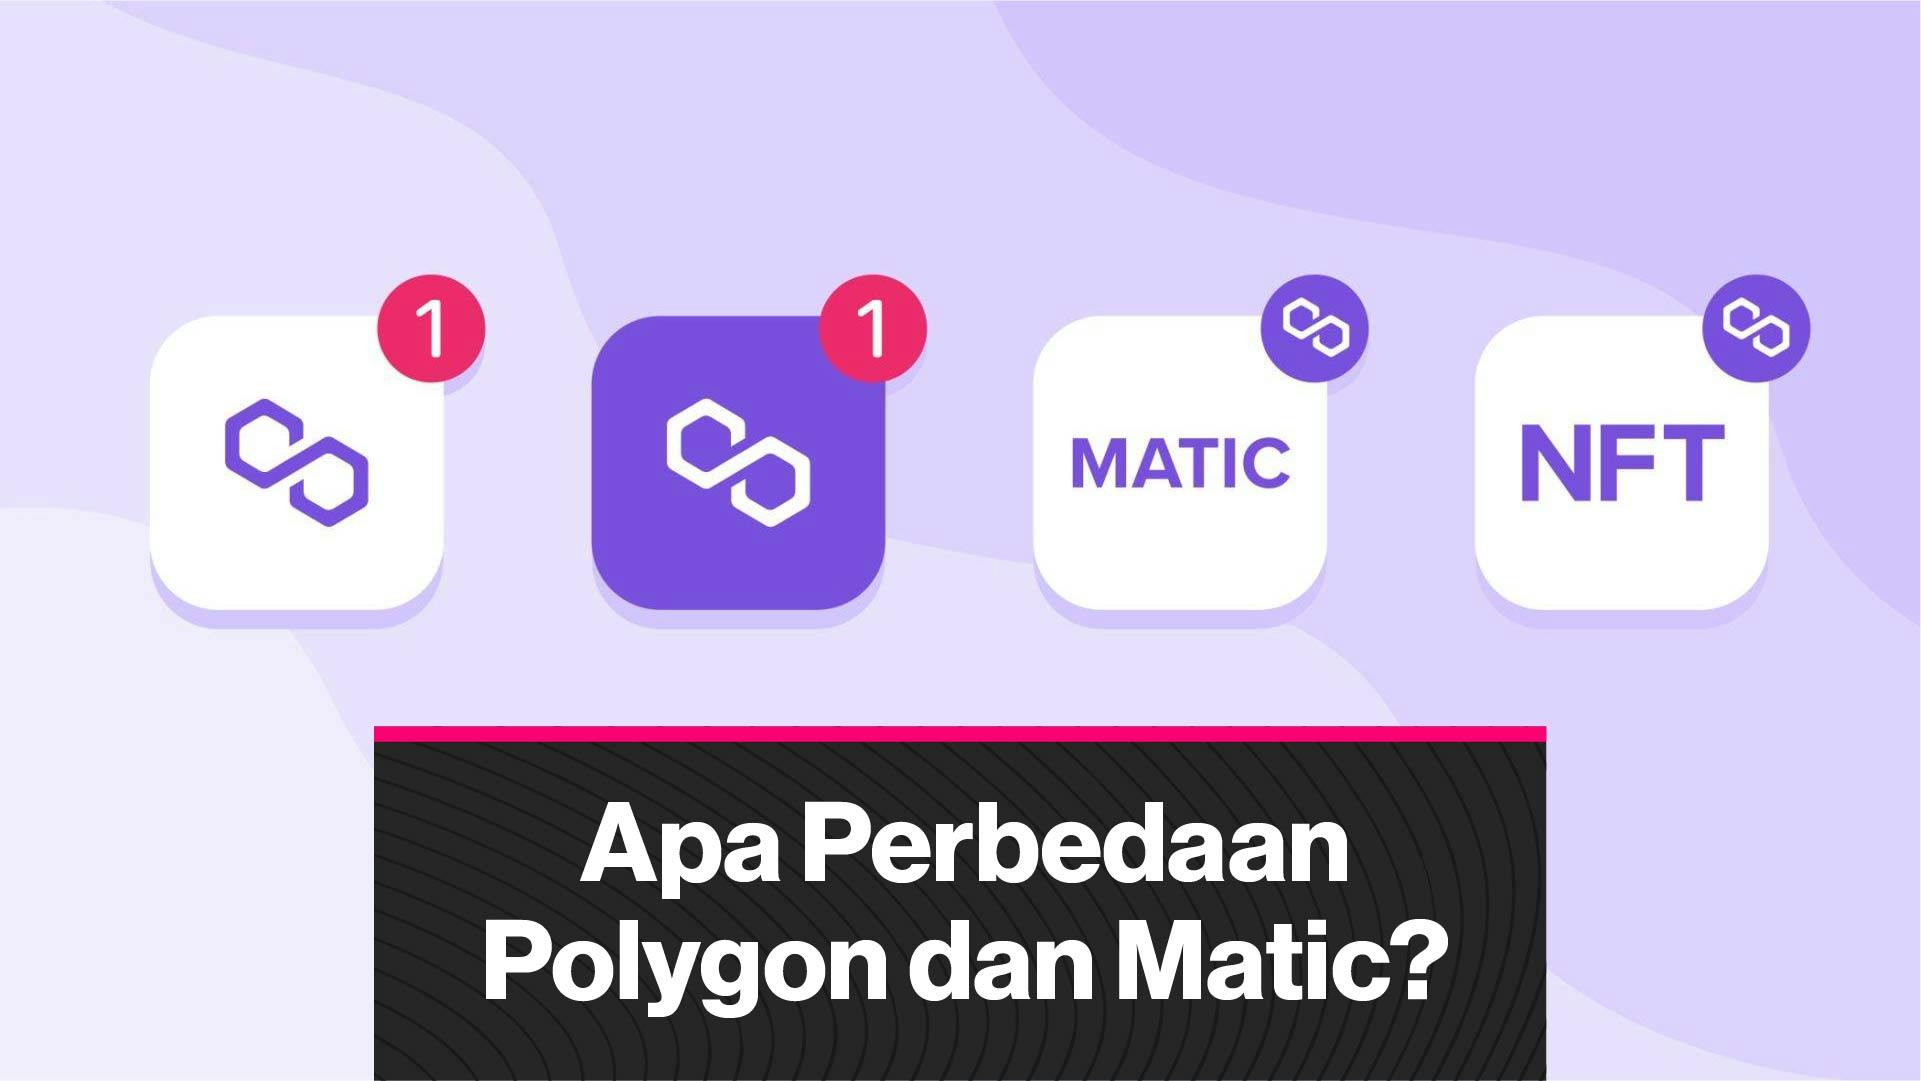 Apa Perbedaan Polygon dan Matic? (Coindesk Indonesia)